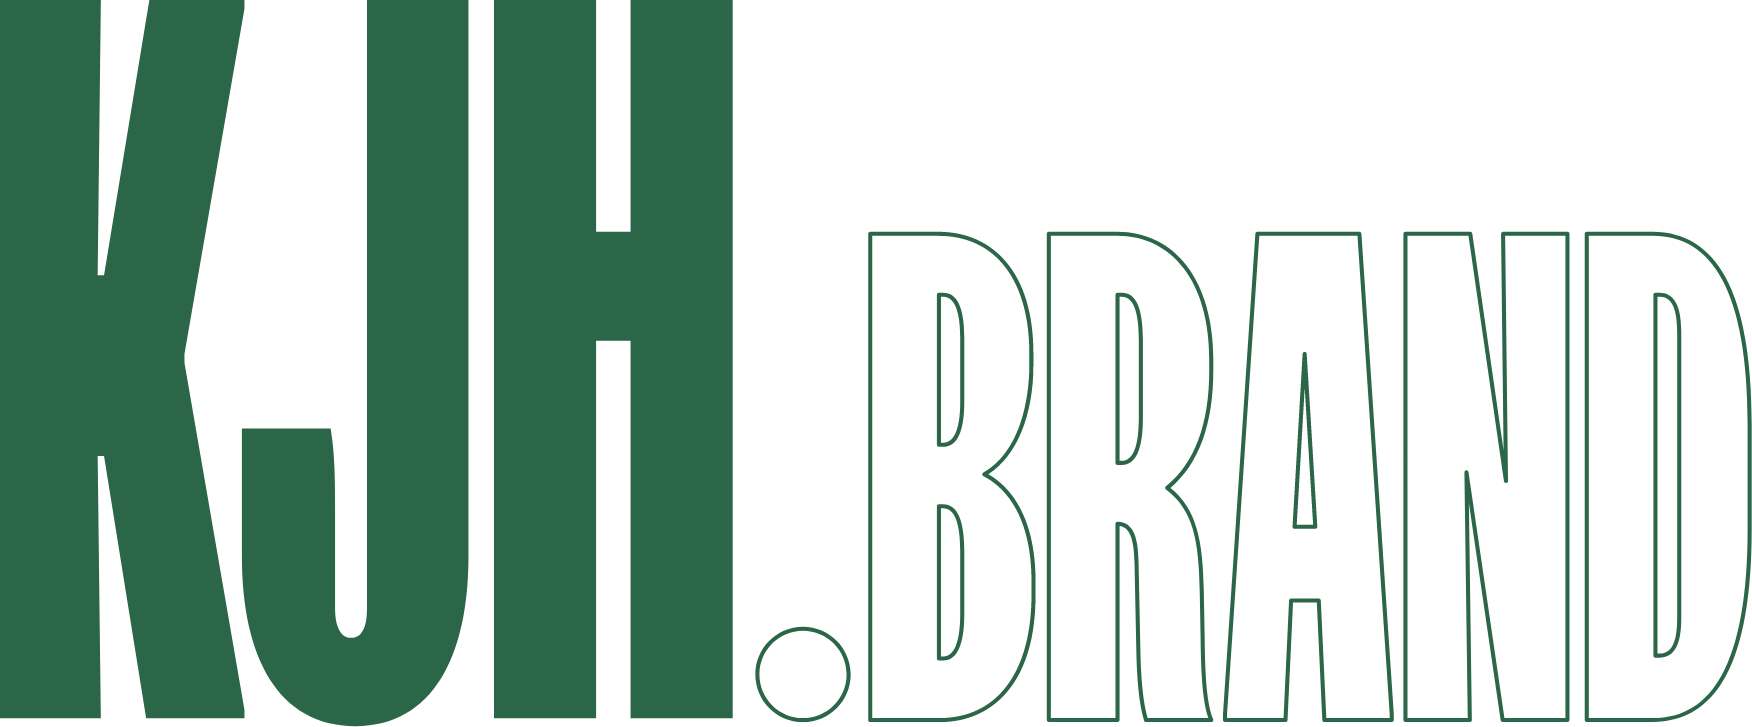 kjh brand footer logo